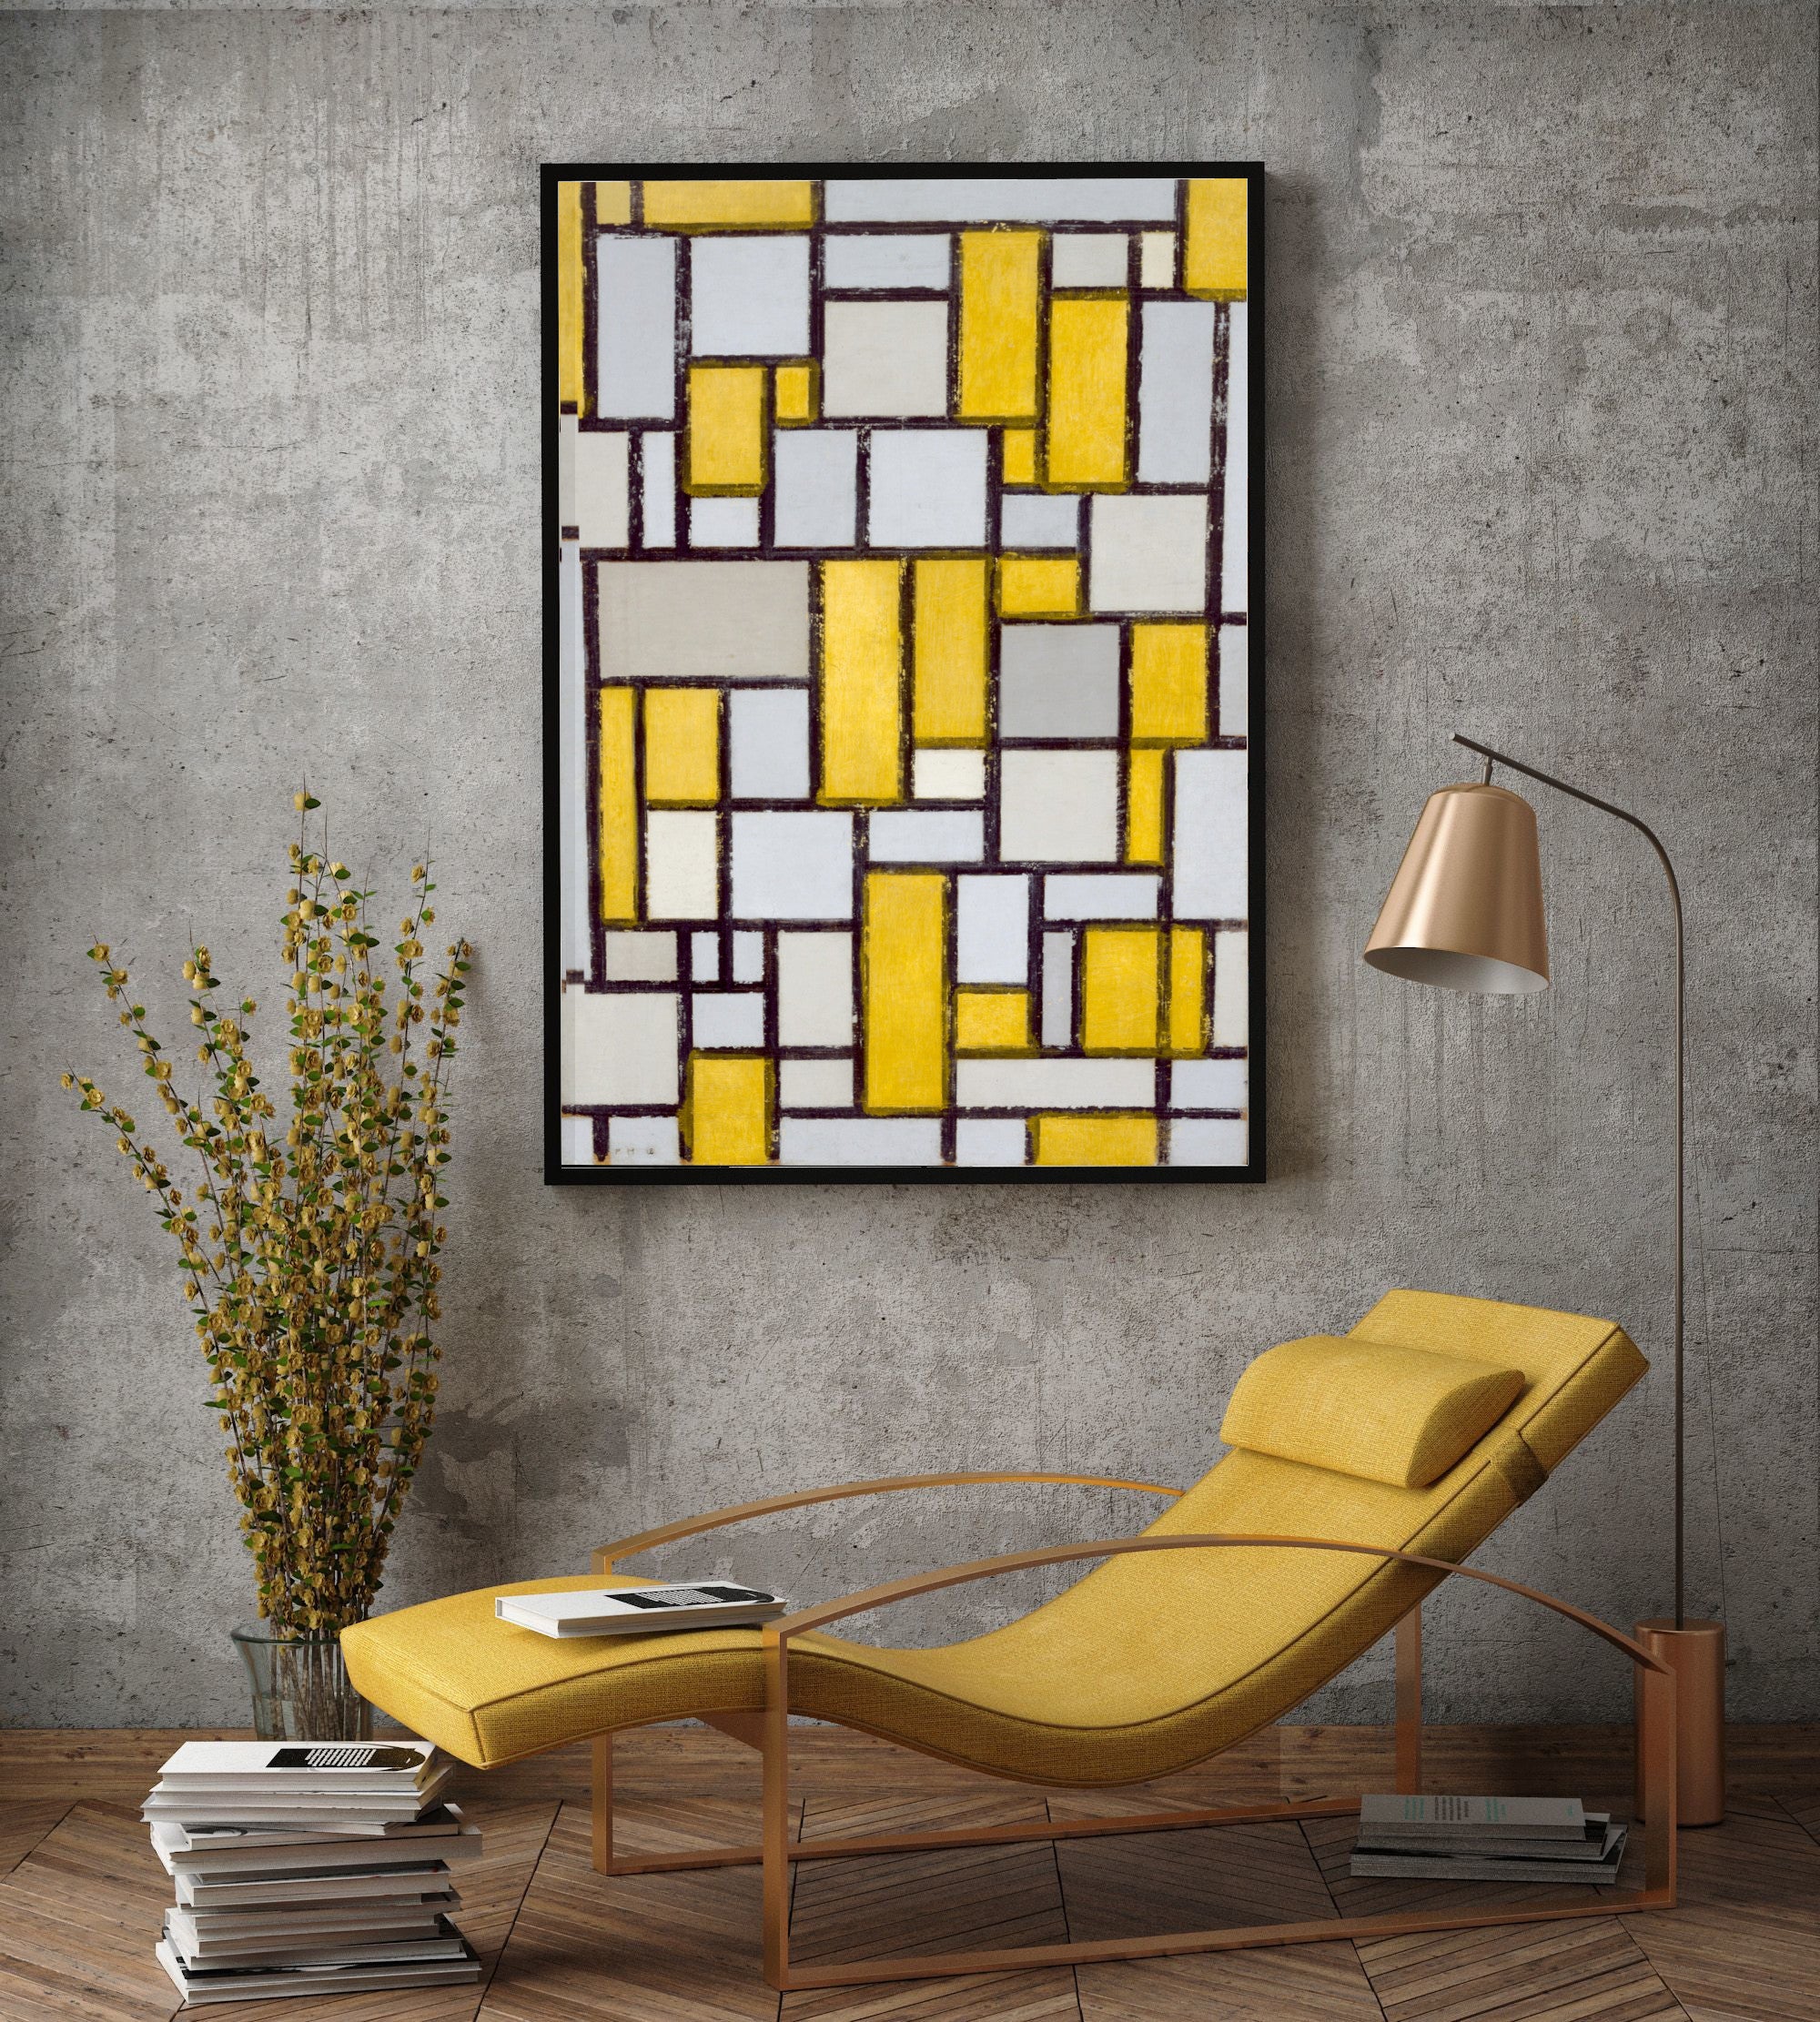 Piet Mondrian print in modern home